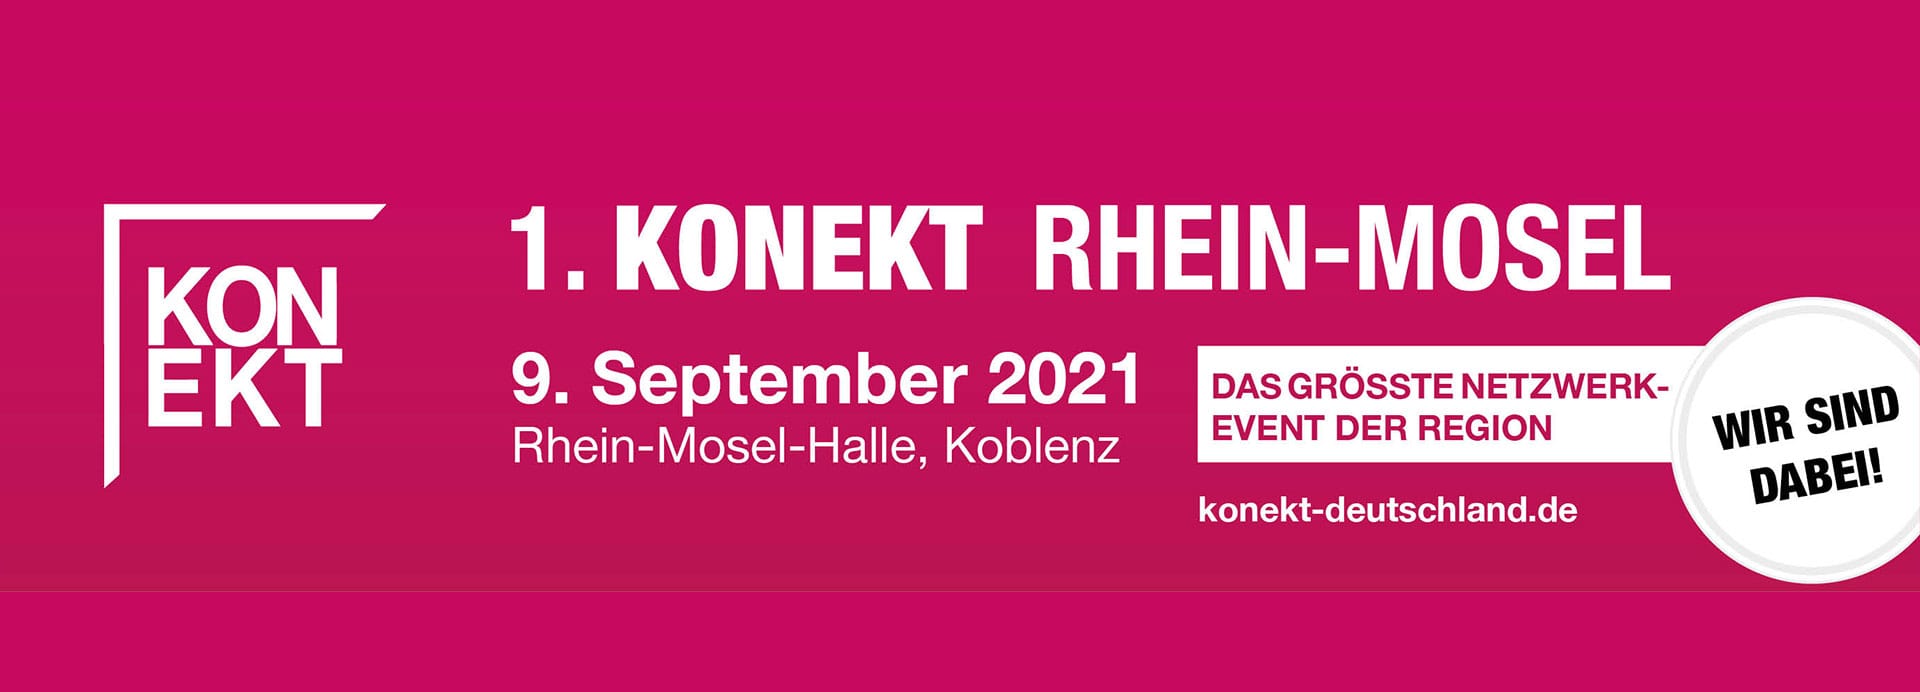 Konekt Rhein-Mosel in Koblenz